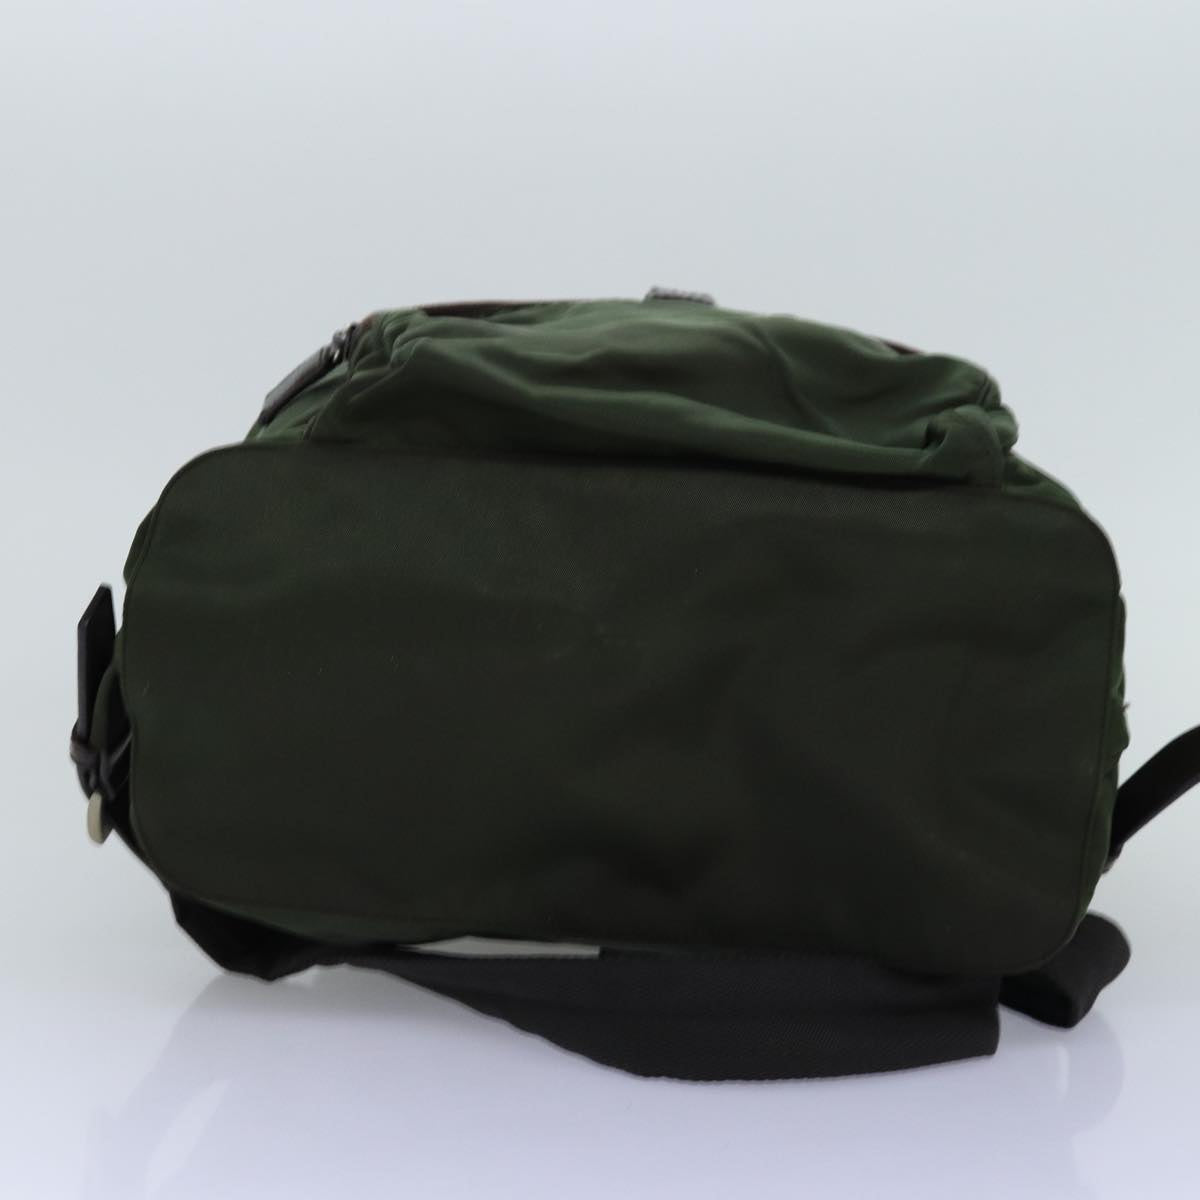 PRADA Backpack Nylon Green Auth bs14087